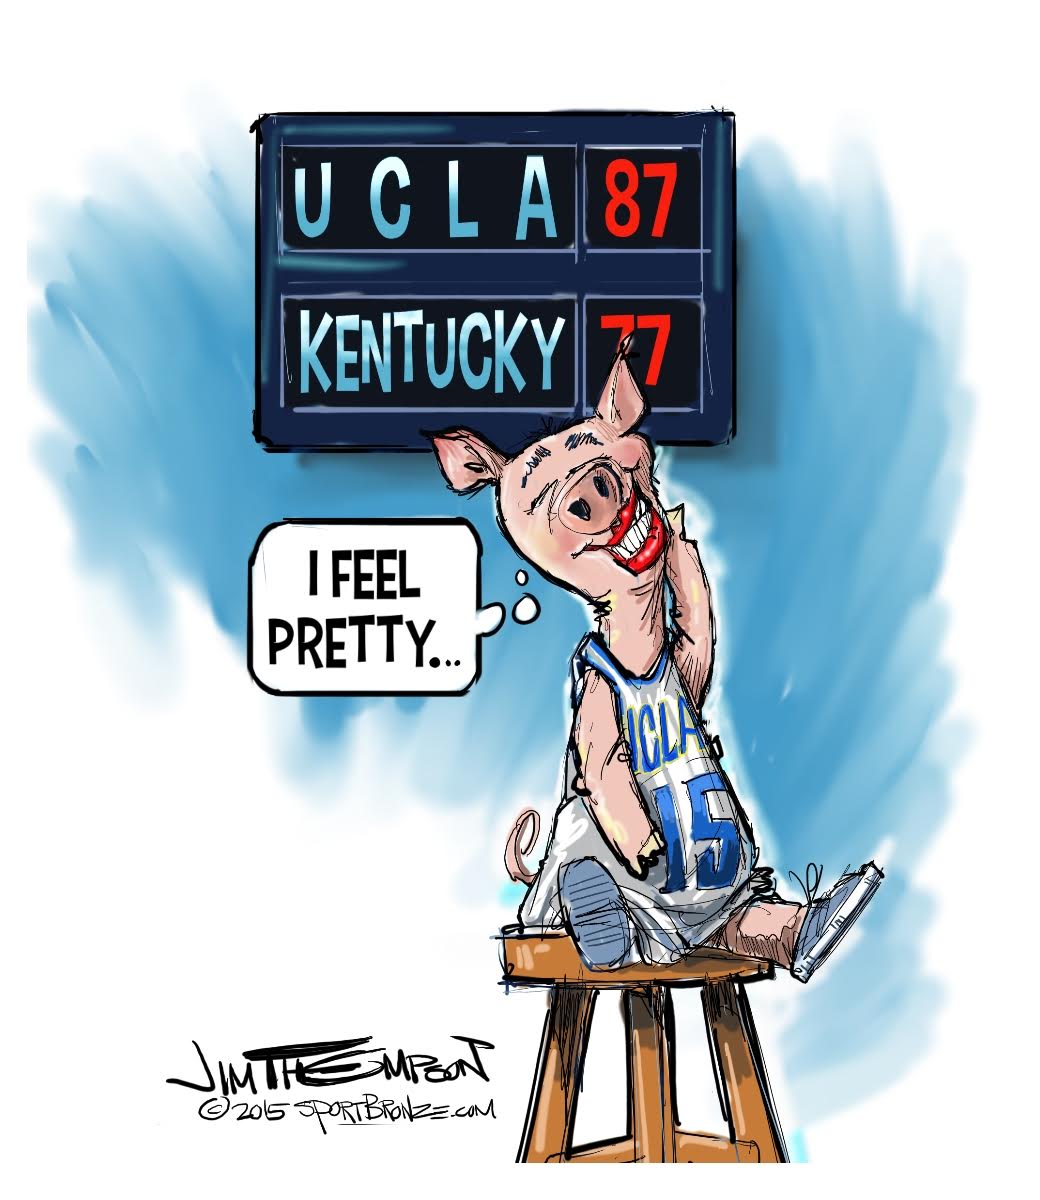 UCLA men's beats No. 1 Kentucky 87-77